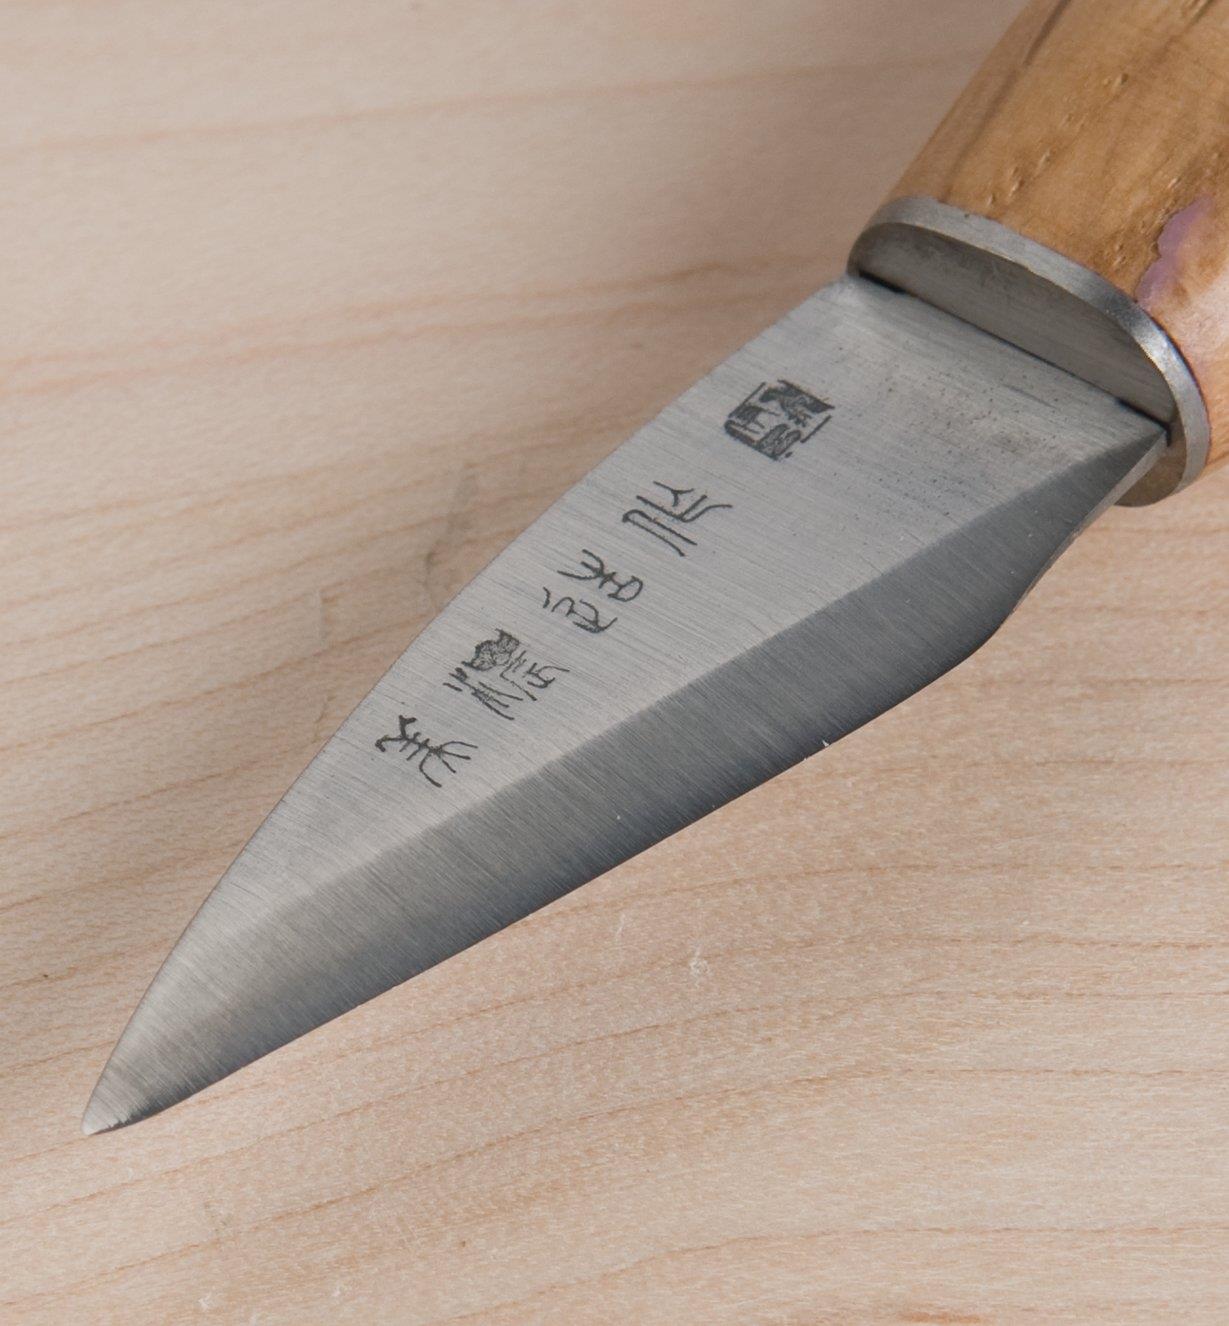 Close-up of skew knife blade